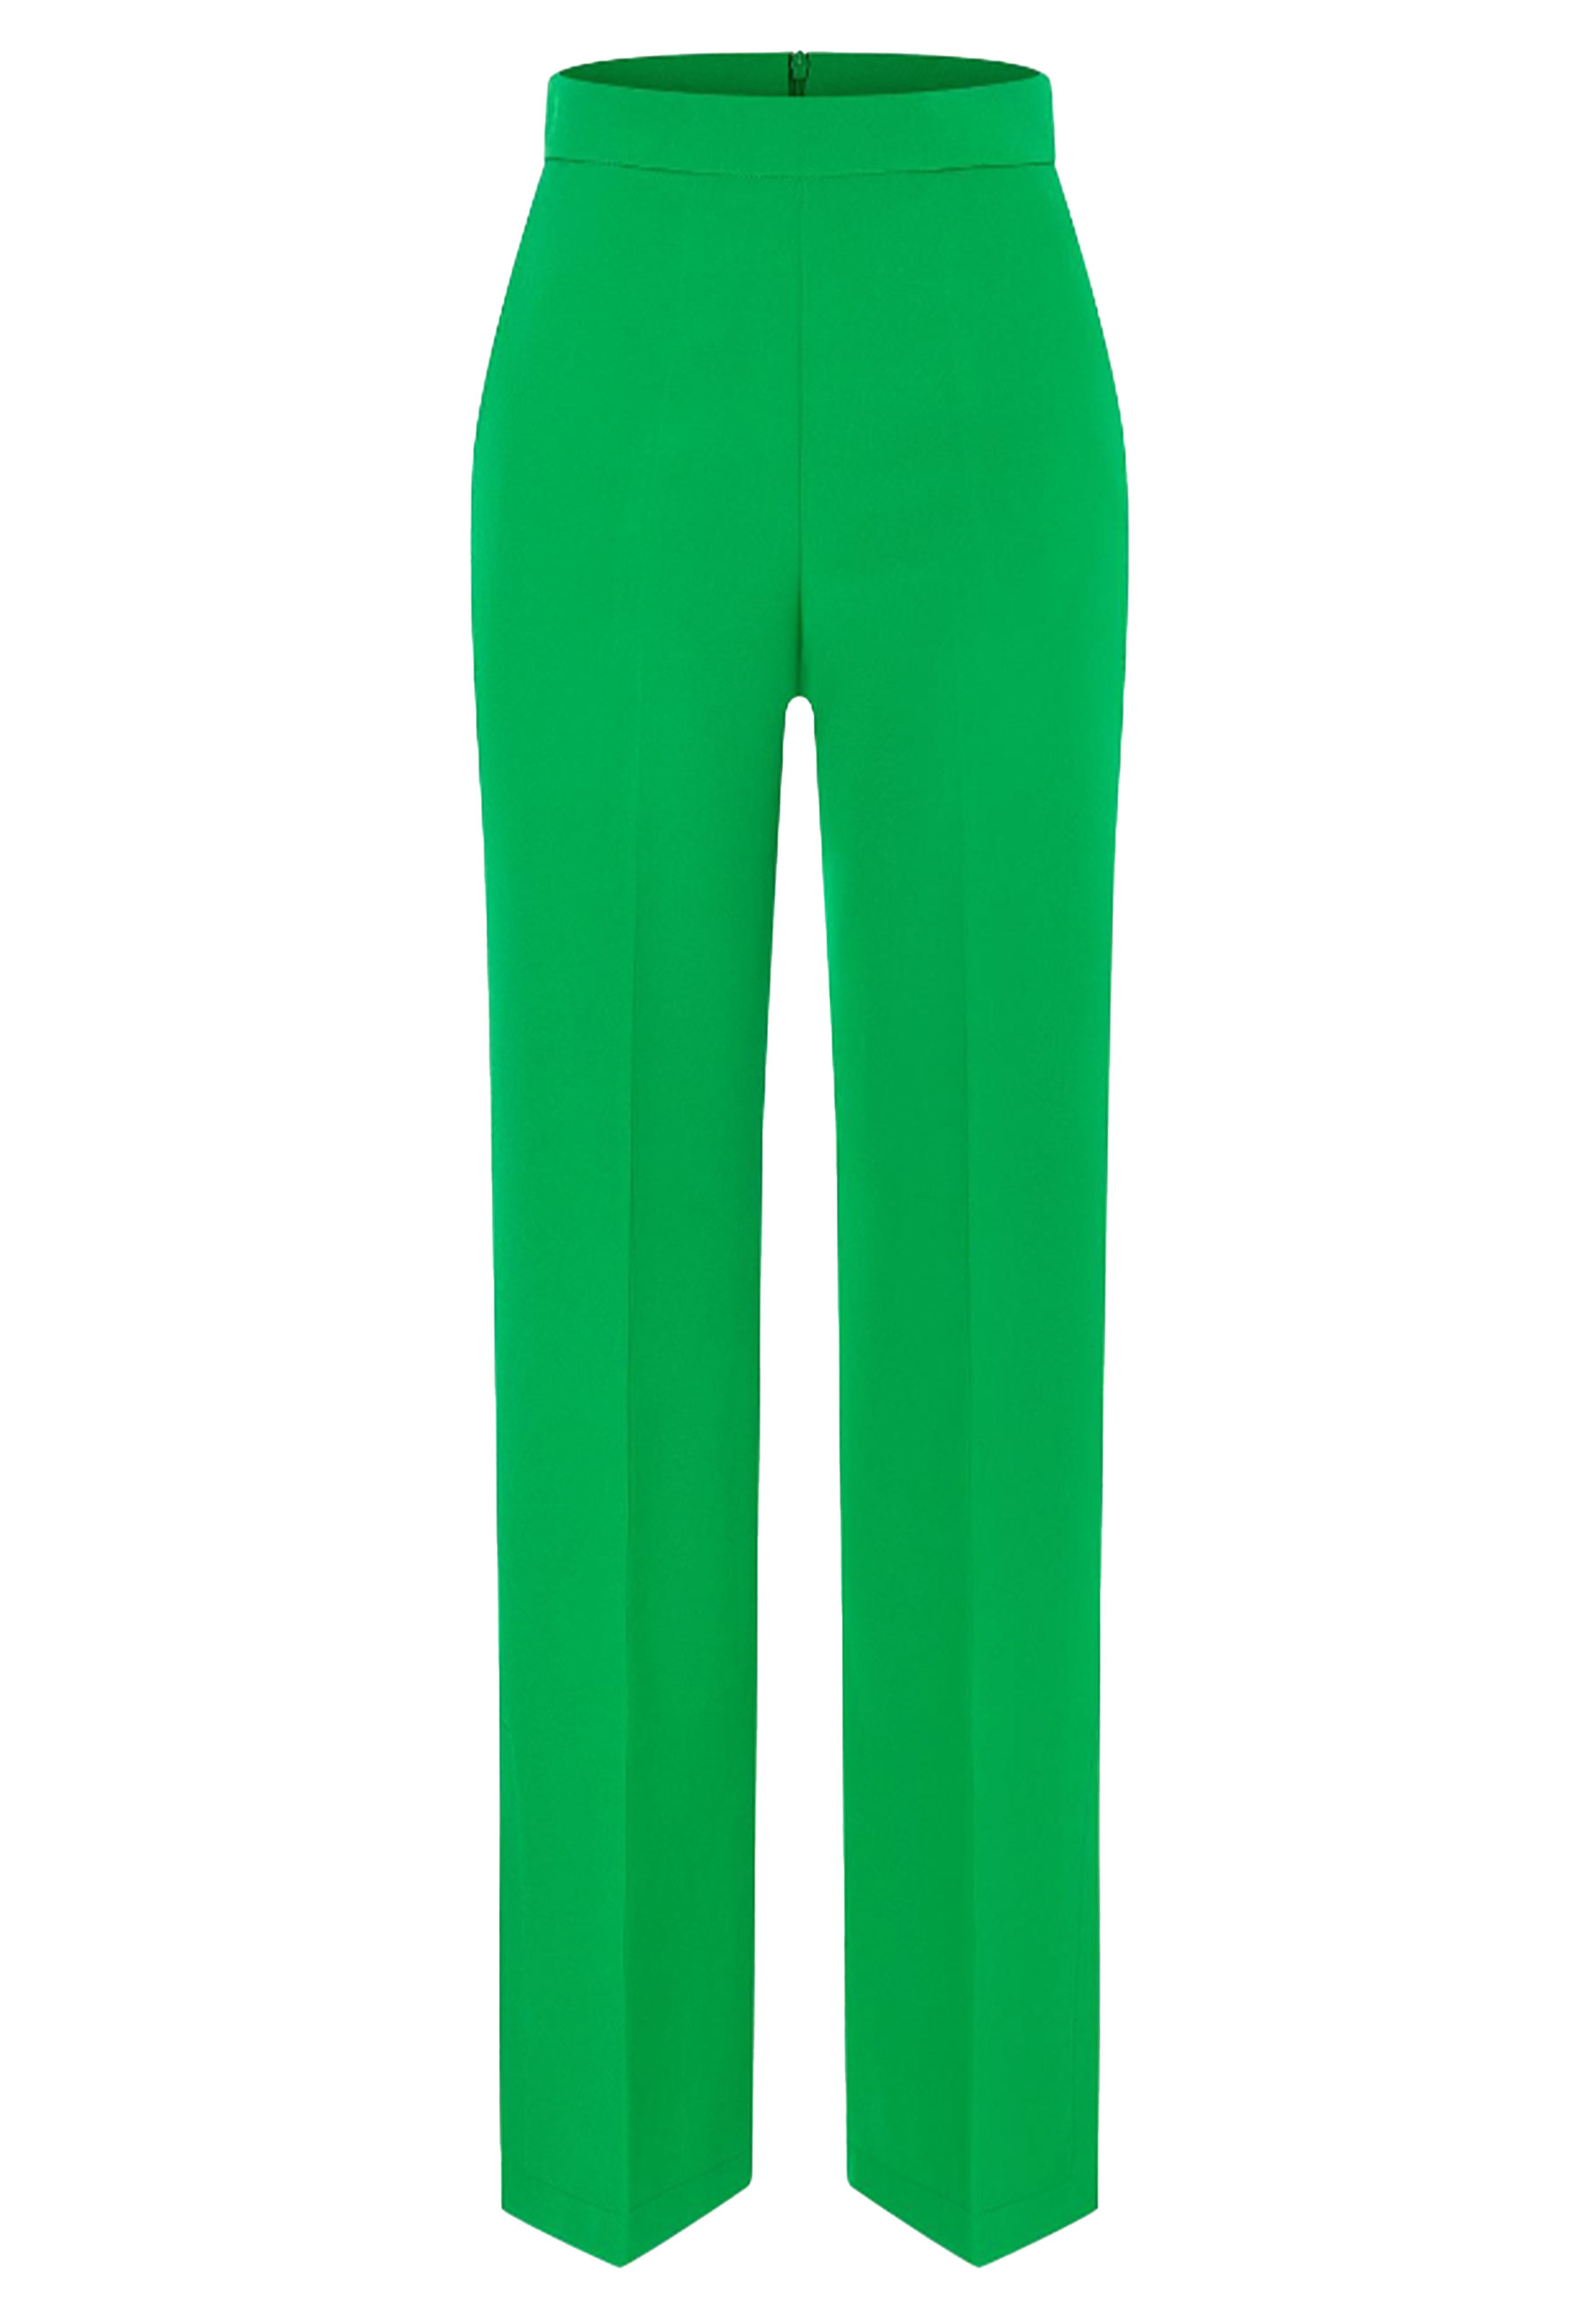 Broek Groen Pacoa pantalons groen